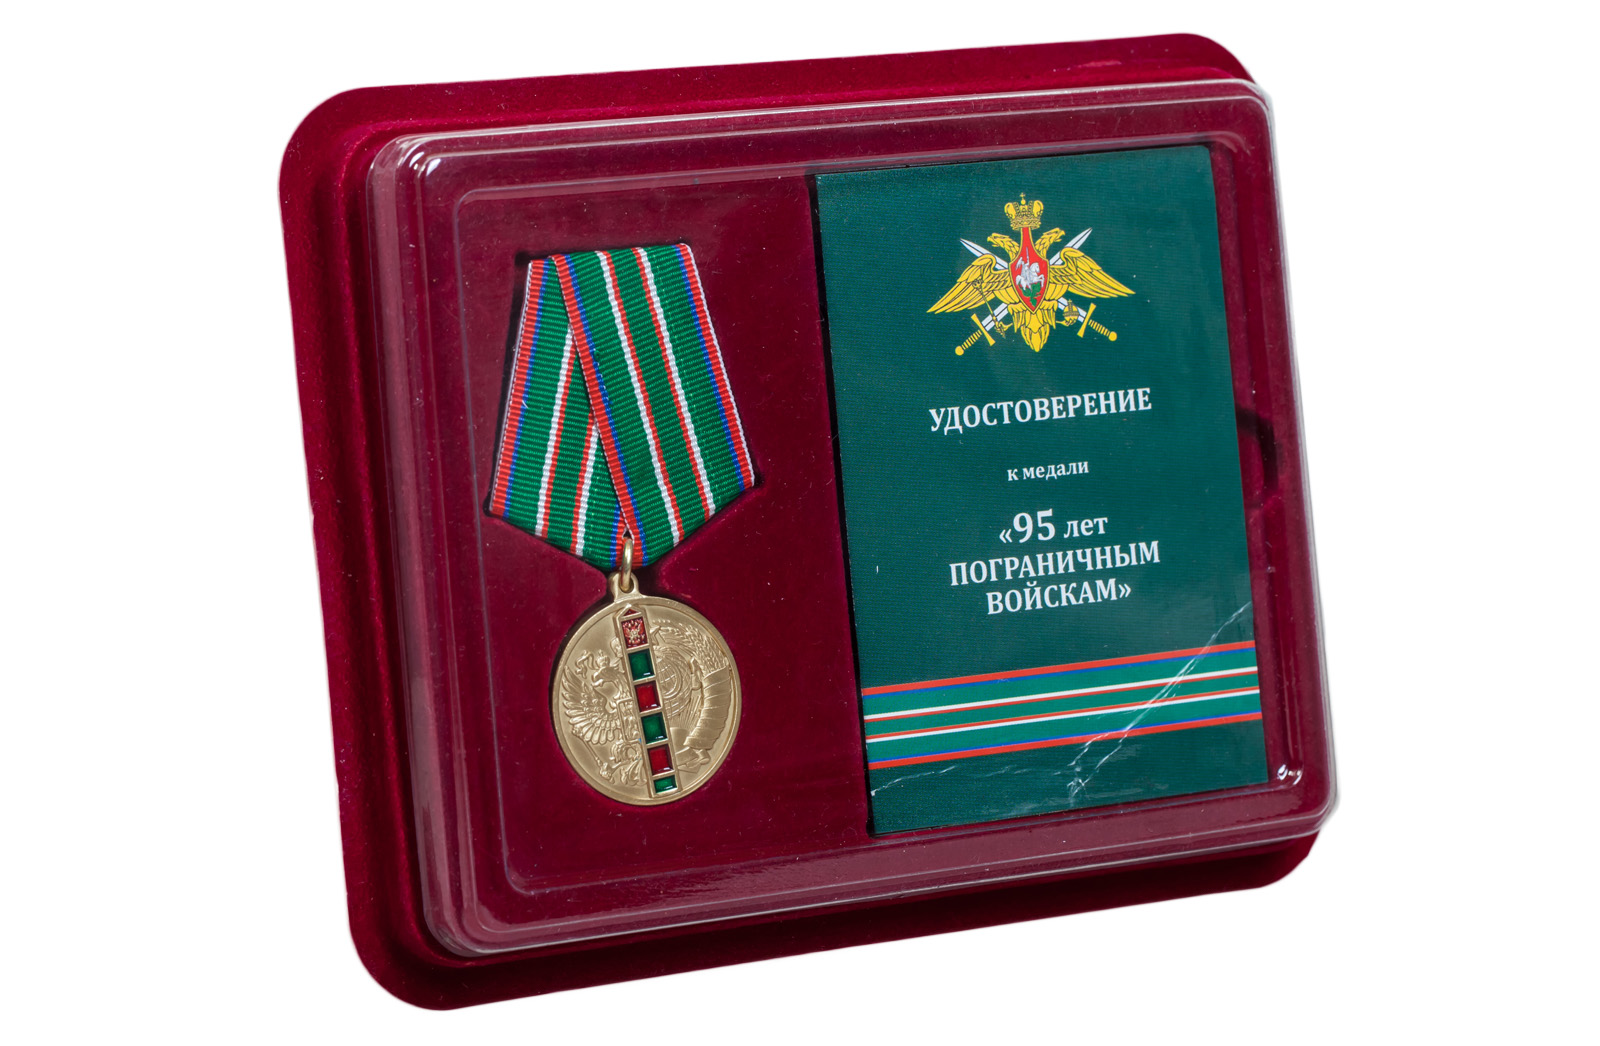 Купить медаль 95 лет Пограничным войскам по лучшей цене